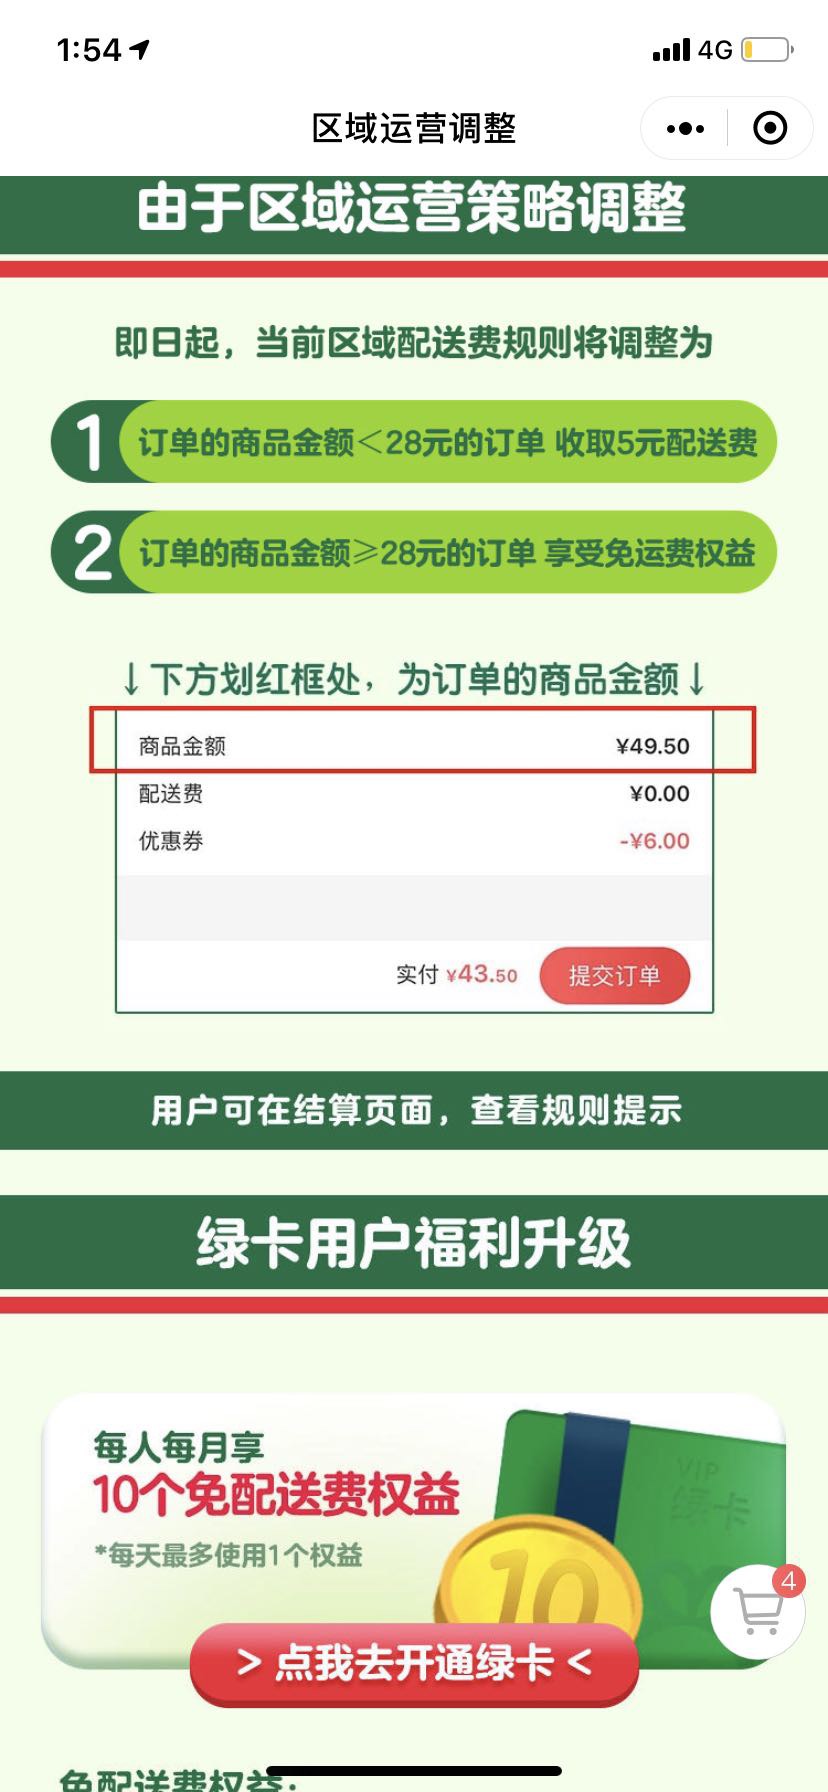 叮咚买菜调整上海地区配送费 小于28元订单收取5元配送费